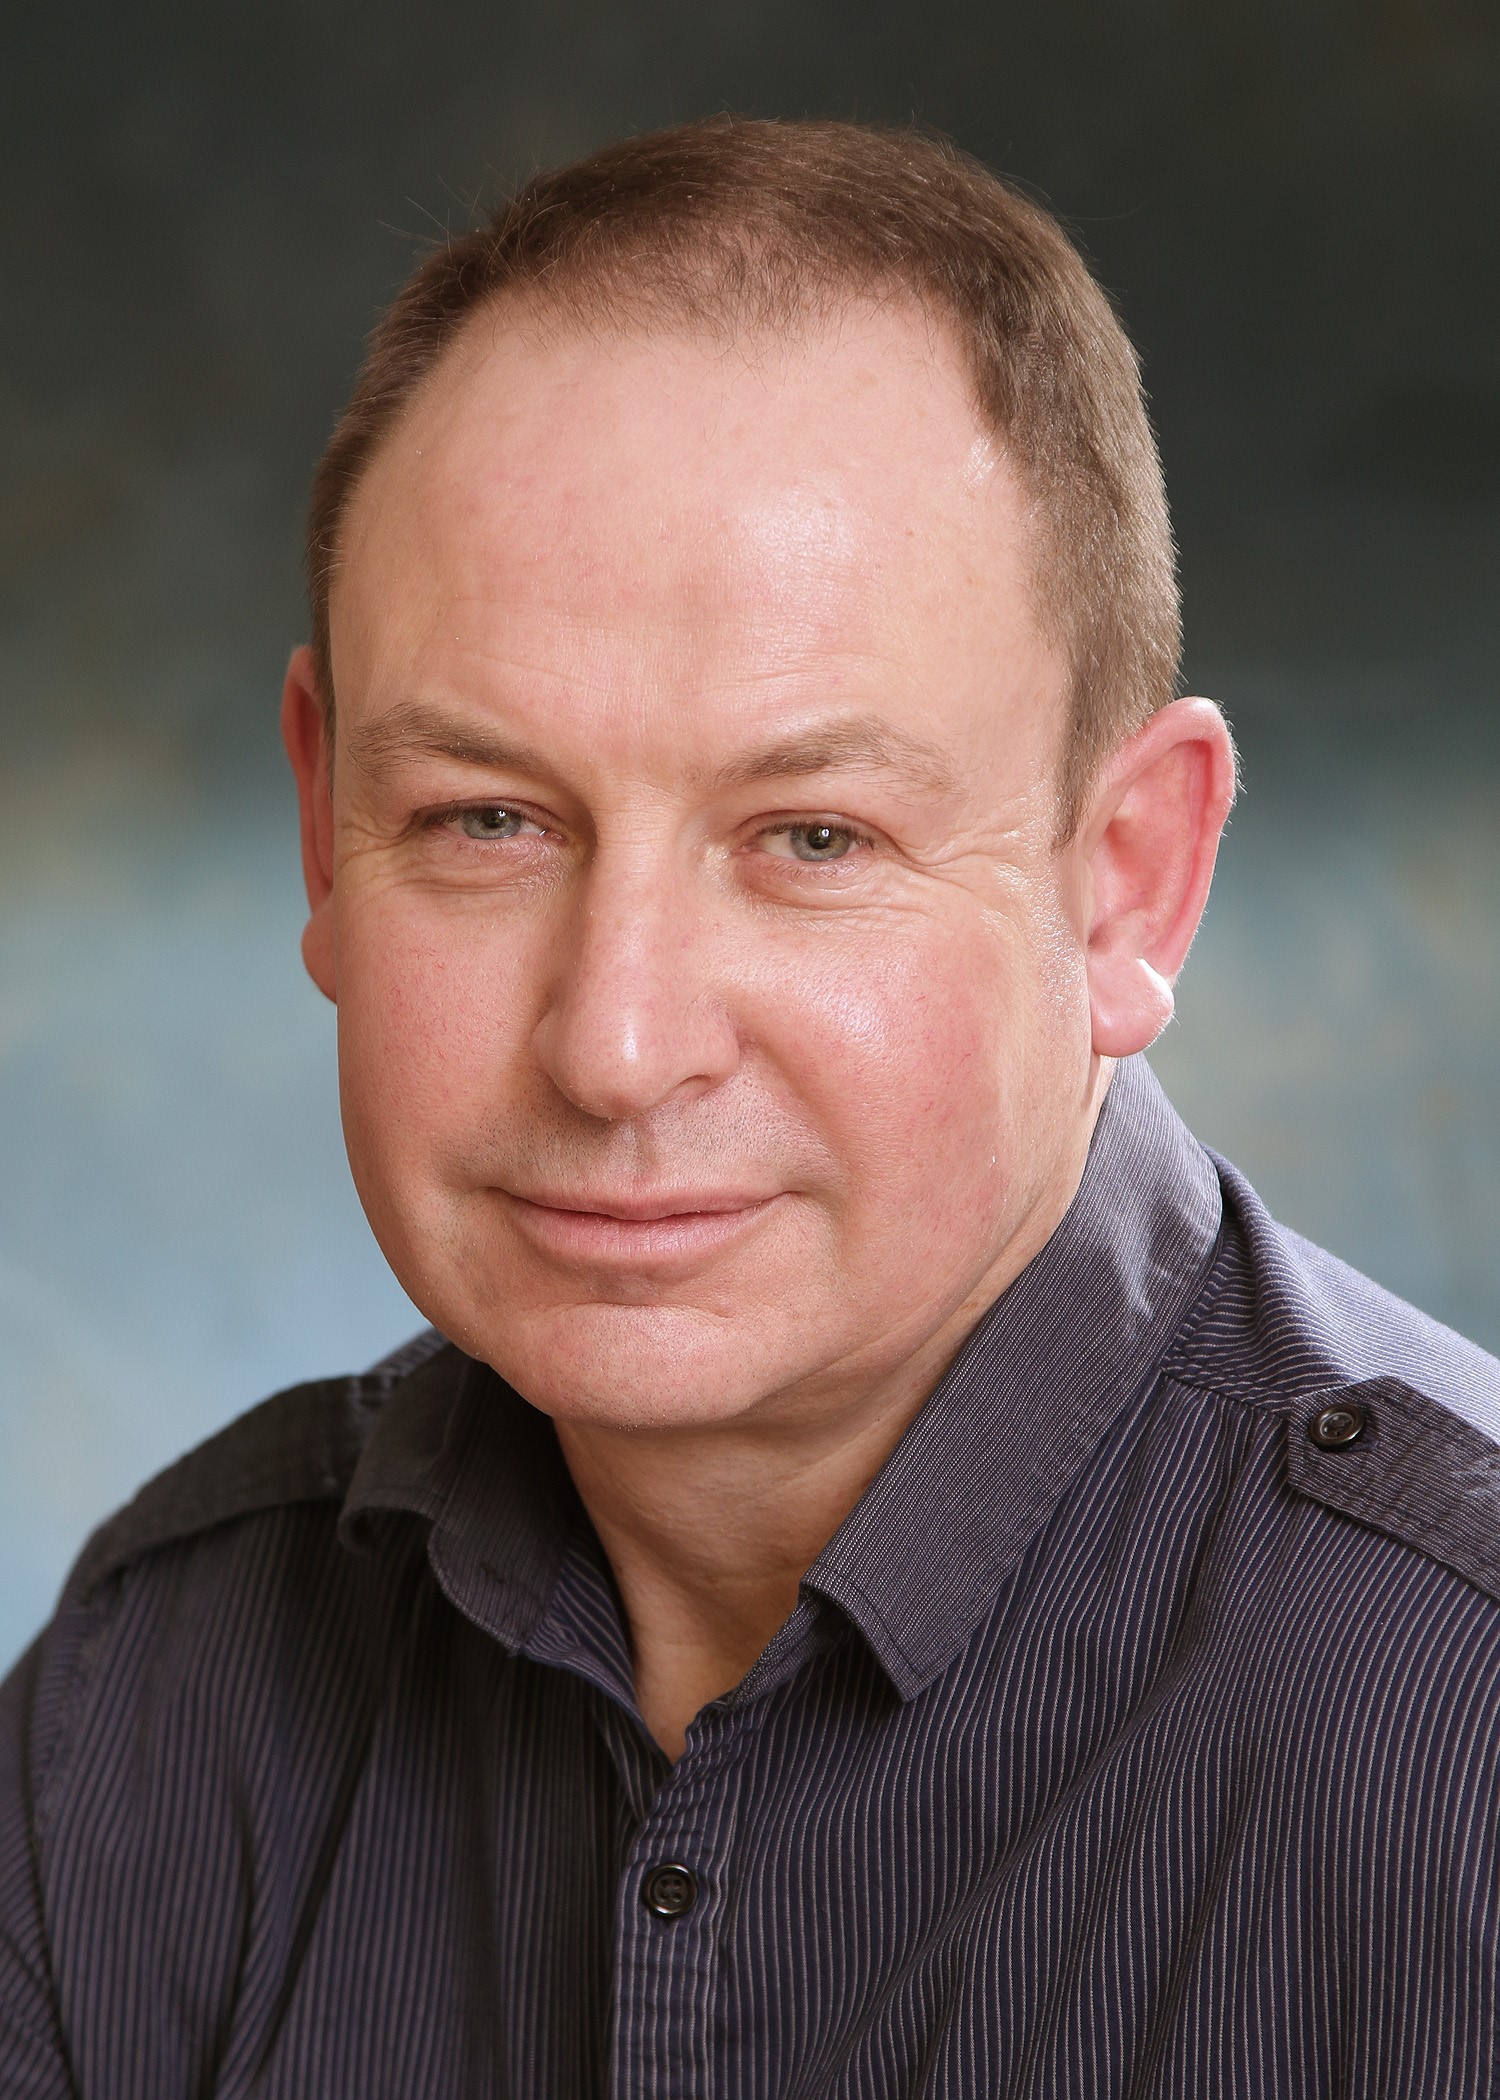 Dr Steve Lloyd